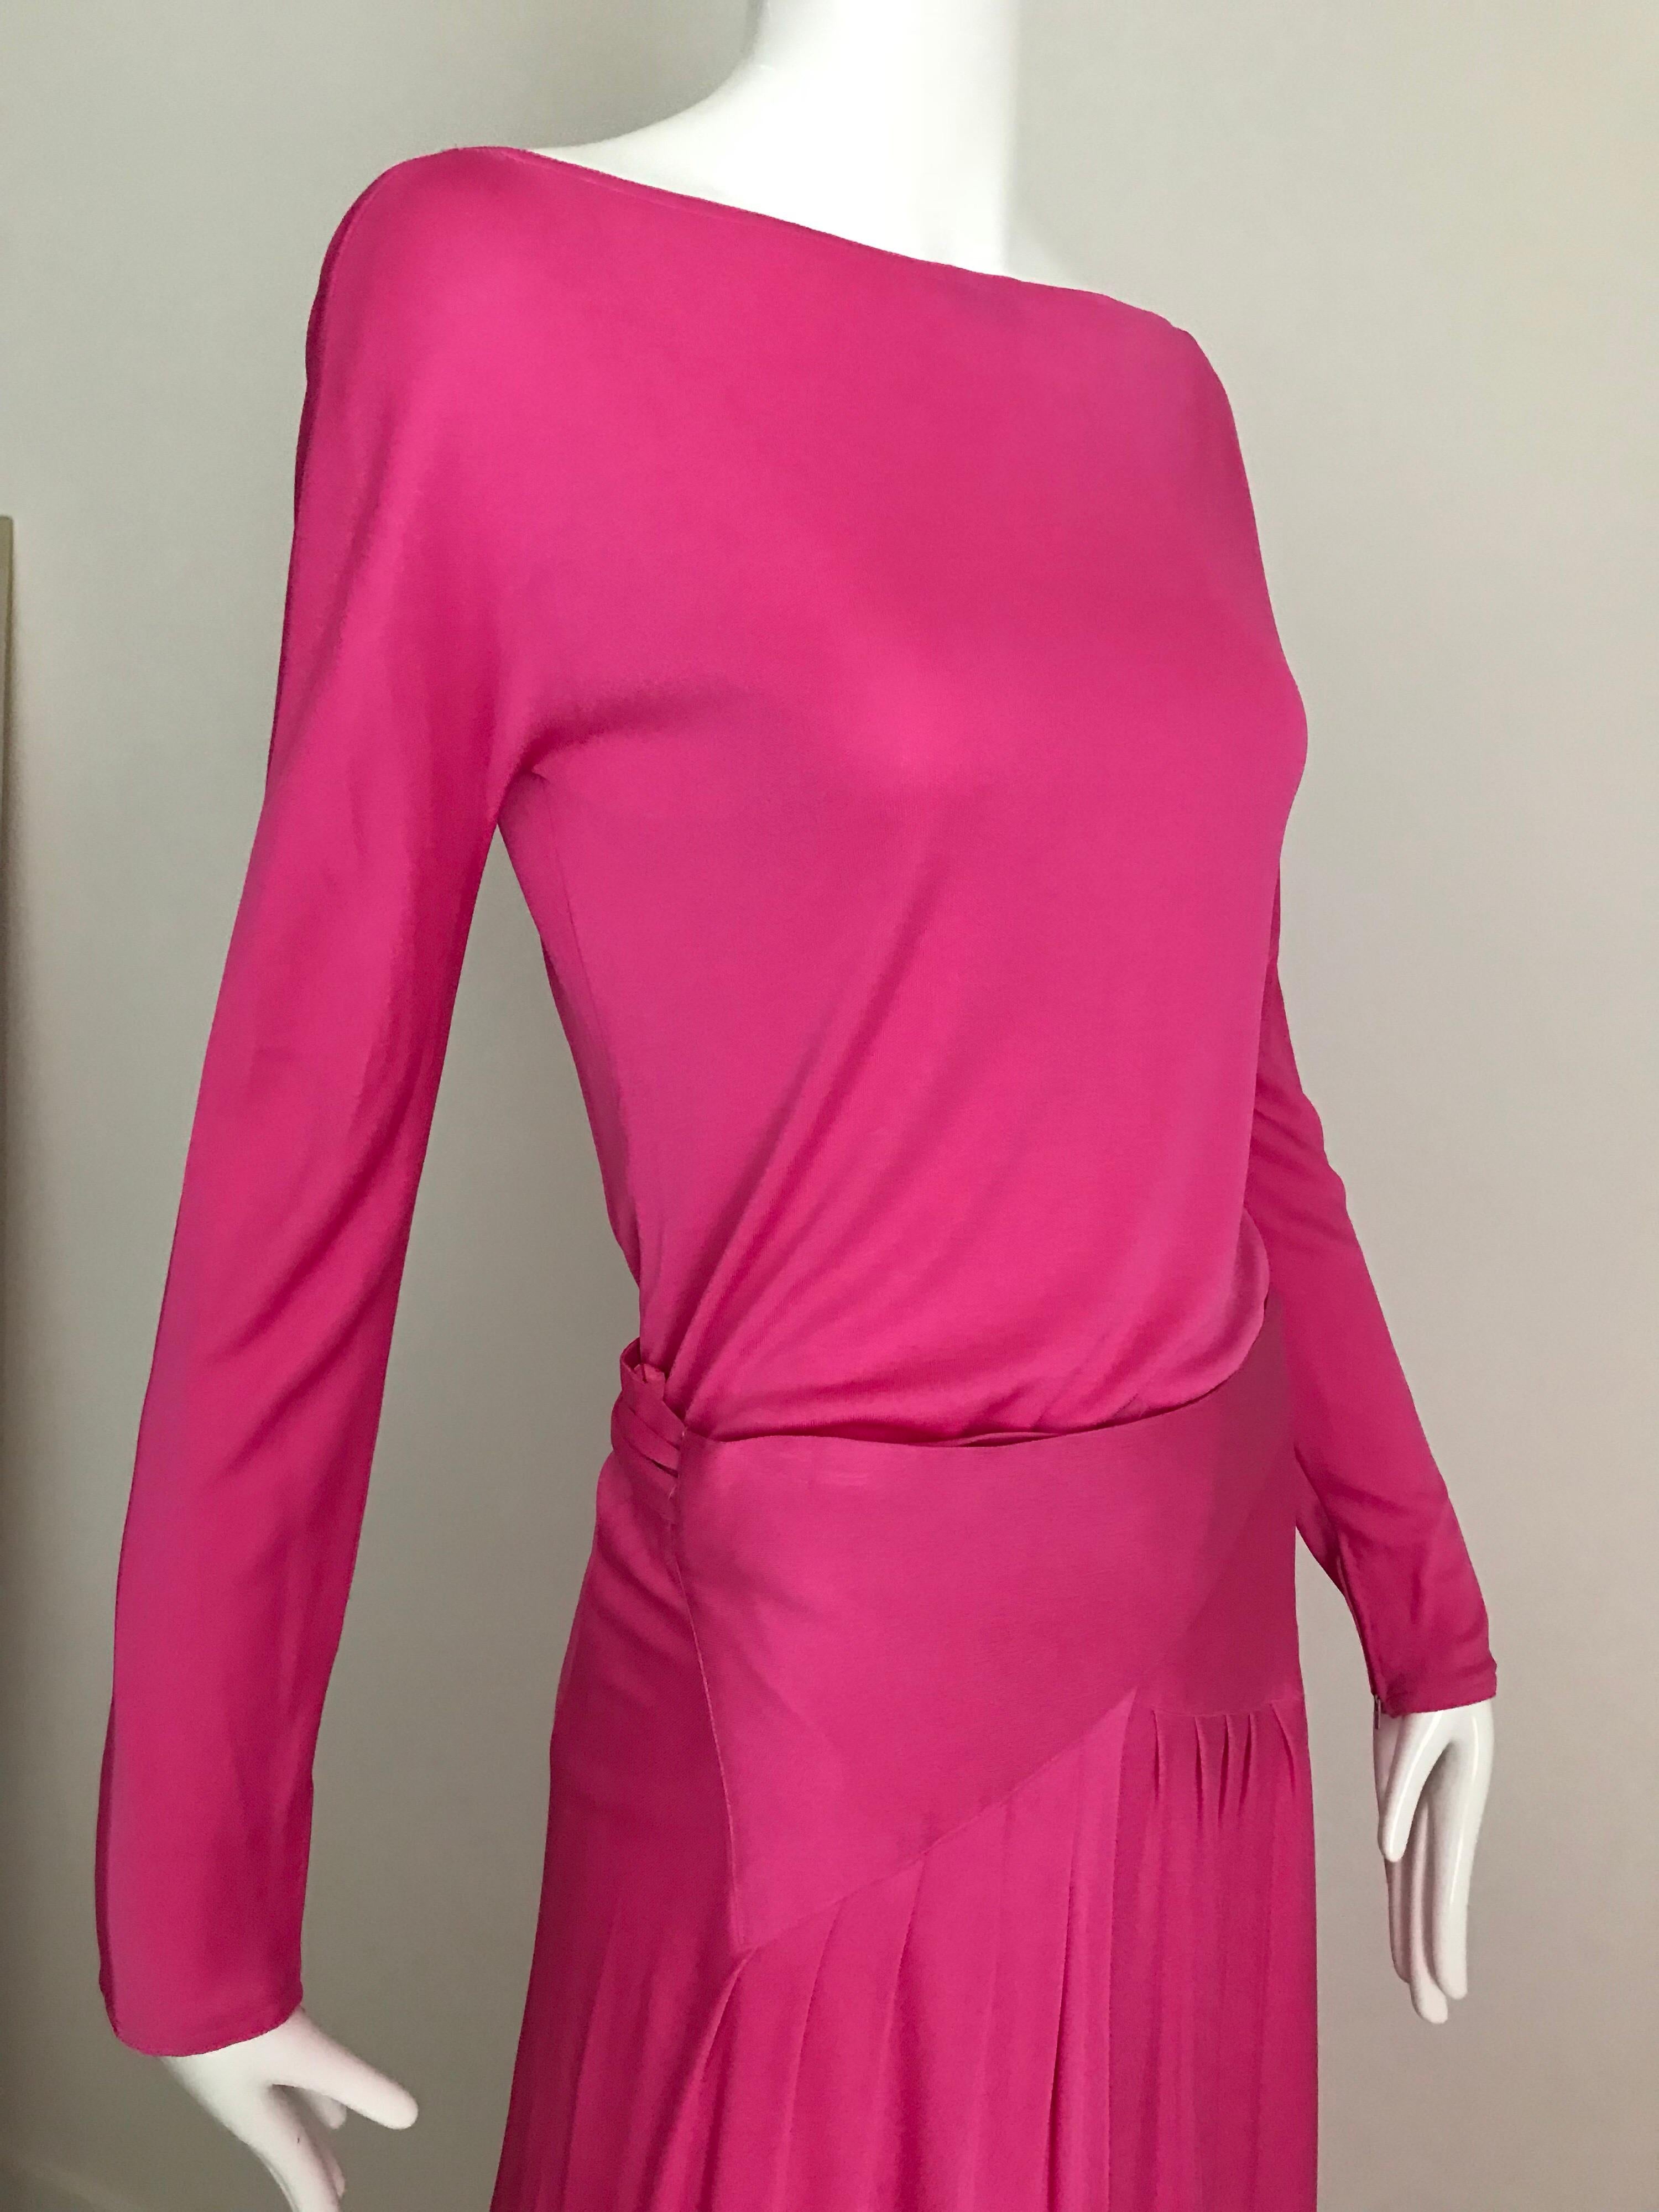 Vintage Geoffrey Beene Hot Pink Matte Jersey Blouse Skirt Set For Sale 2